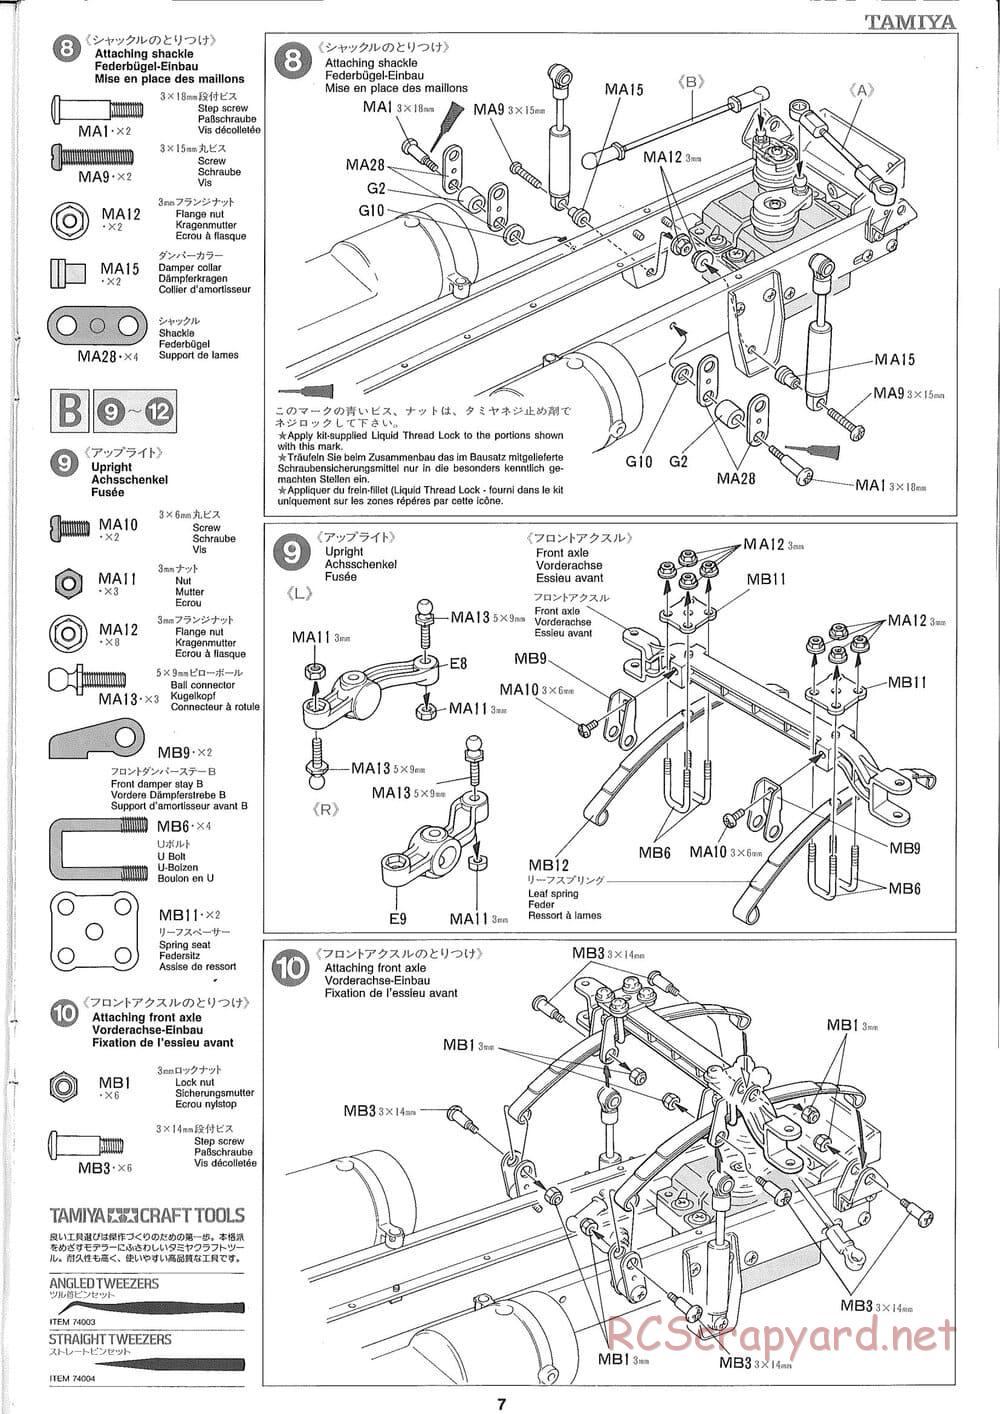 Tamiya - Ford Aeromax - Manual - Page 7